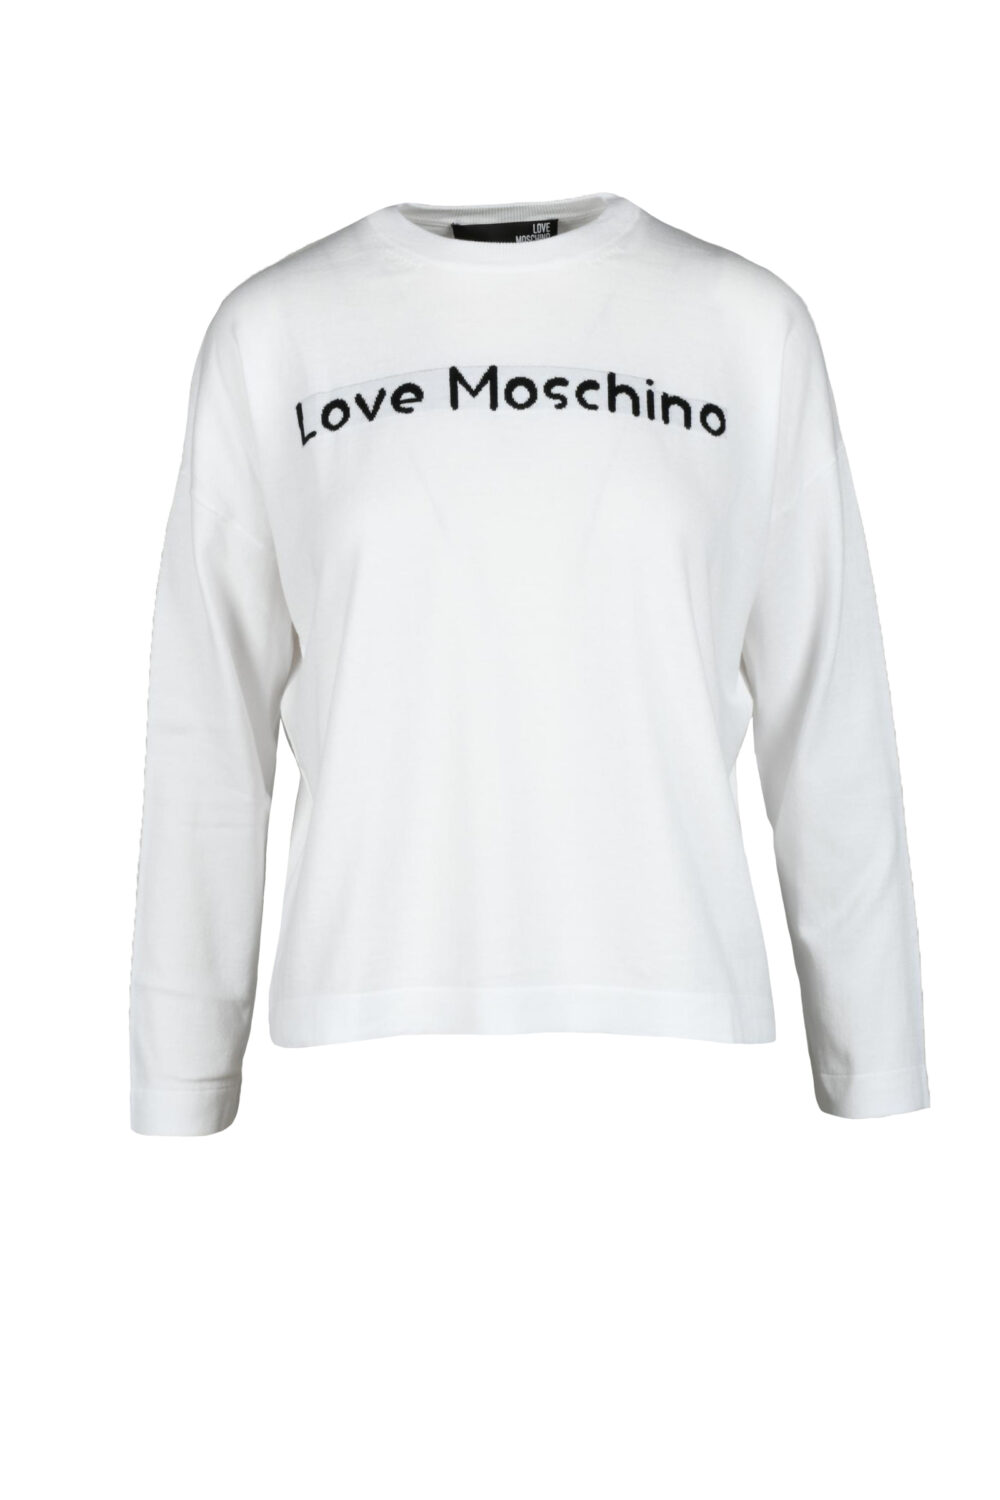 Maglia Love Moschino Bianco - Foto 2